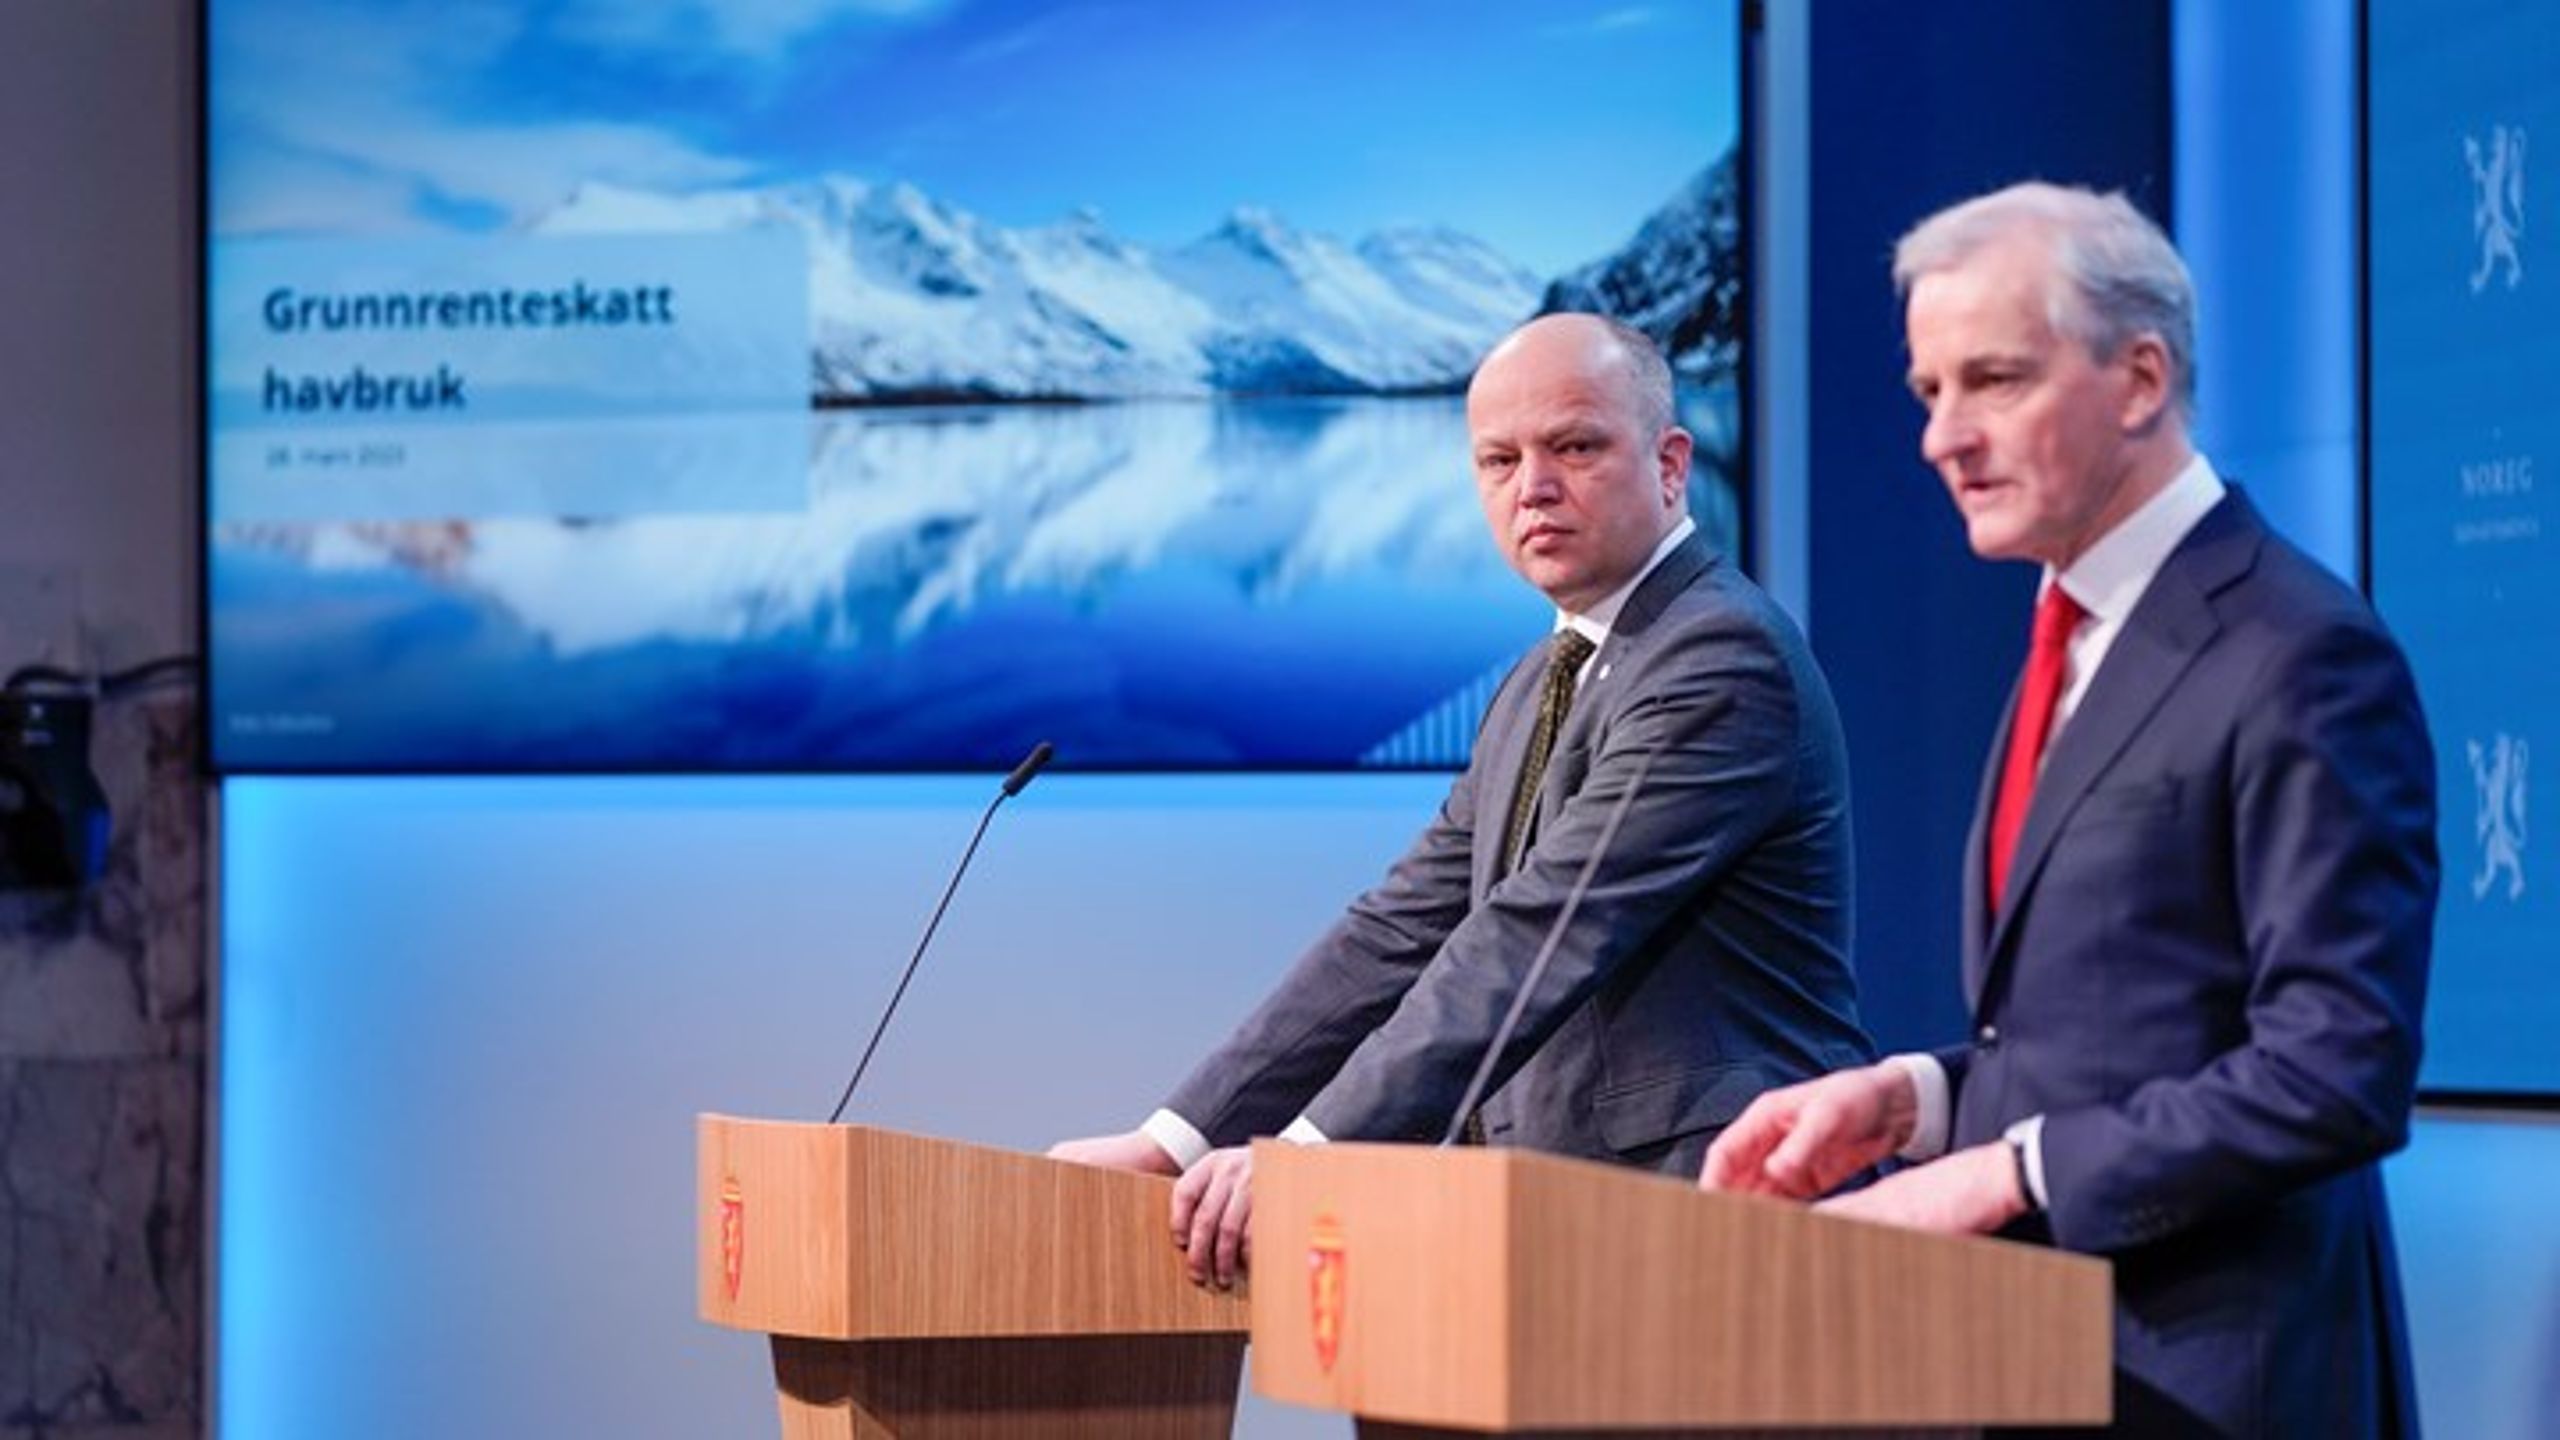 Finansminister Trygve Slagsvold Vedum (Sp) og statsminister Jonas Gahr Støre (Ap) presenterer regjeringens forslag til grunnrenteskatt for havbruk på en pressekonferanse i Oslo.